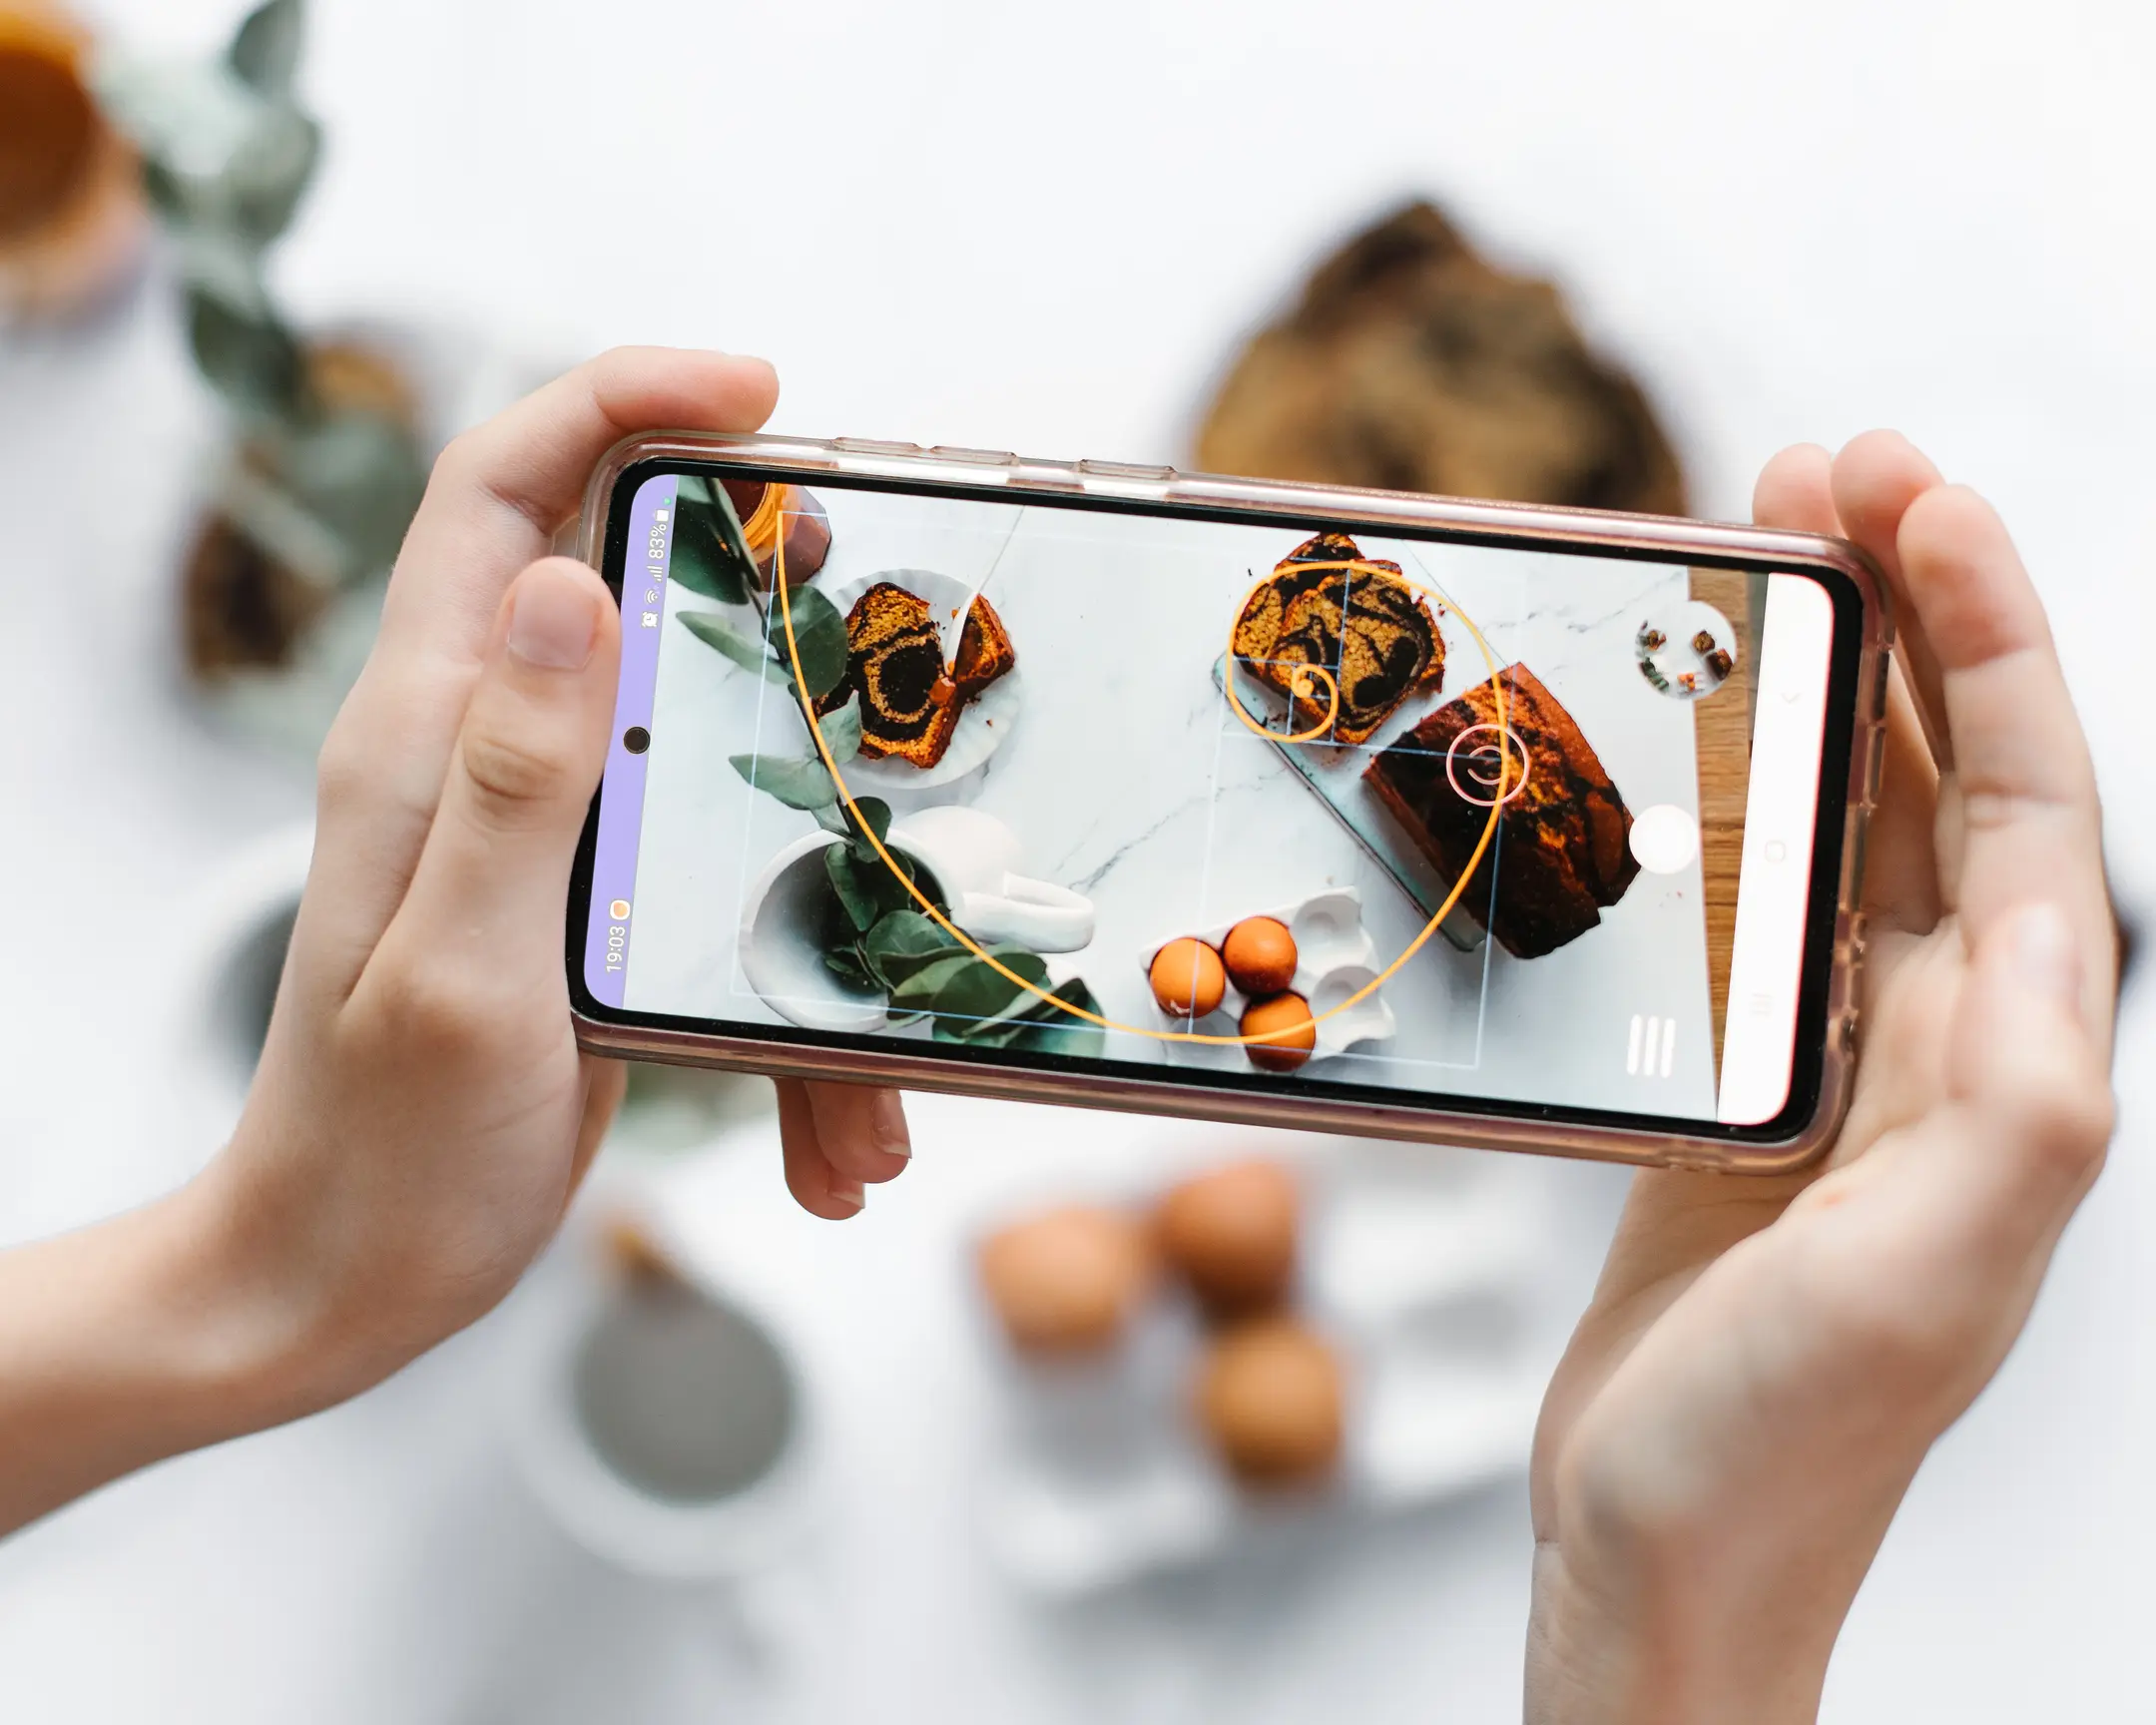 Страхотно фото приложение - златна спирала. Човек, който държи телефон, демонстриращ приложението Awesome Photo и златна спирала, торти, яйца и листа.